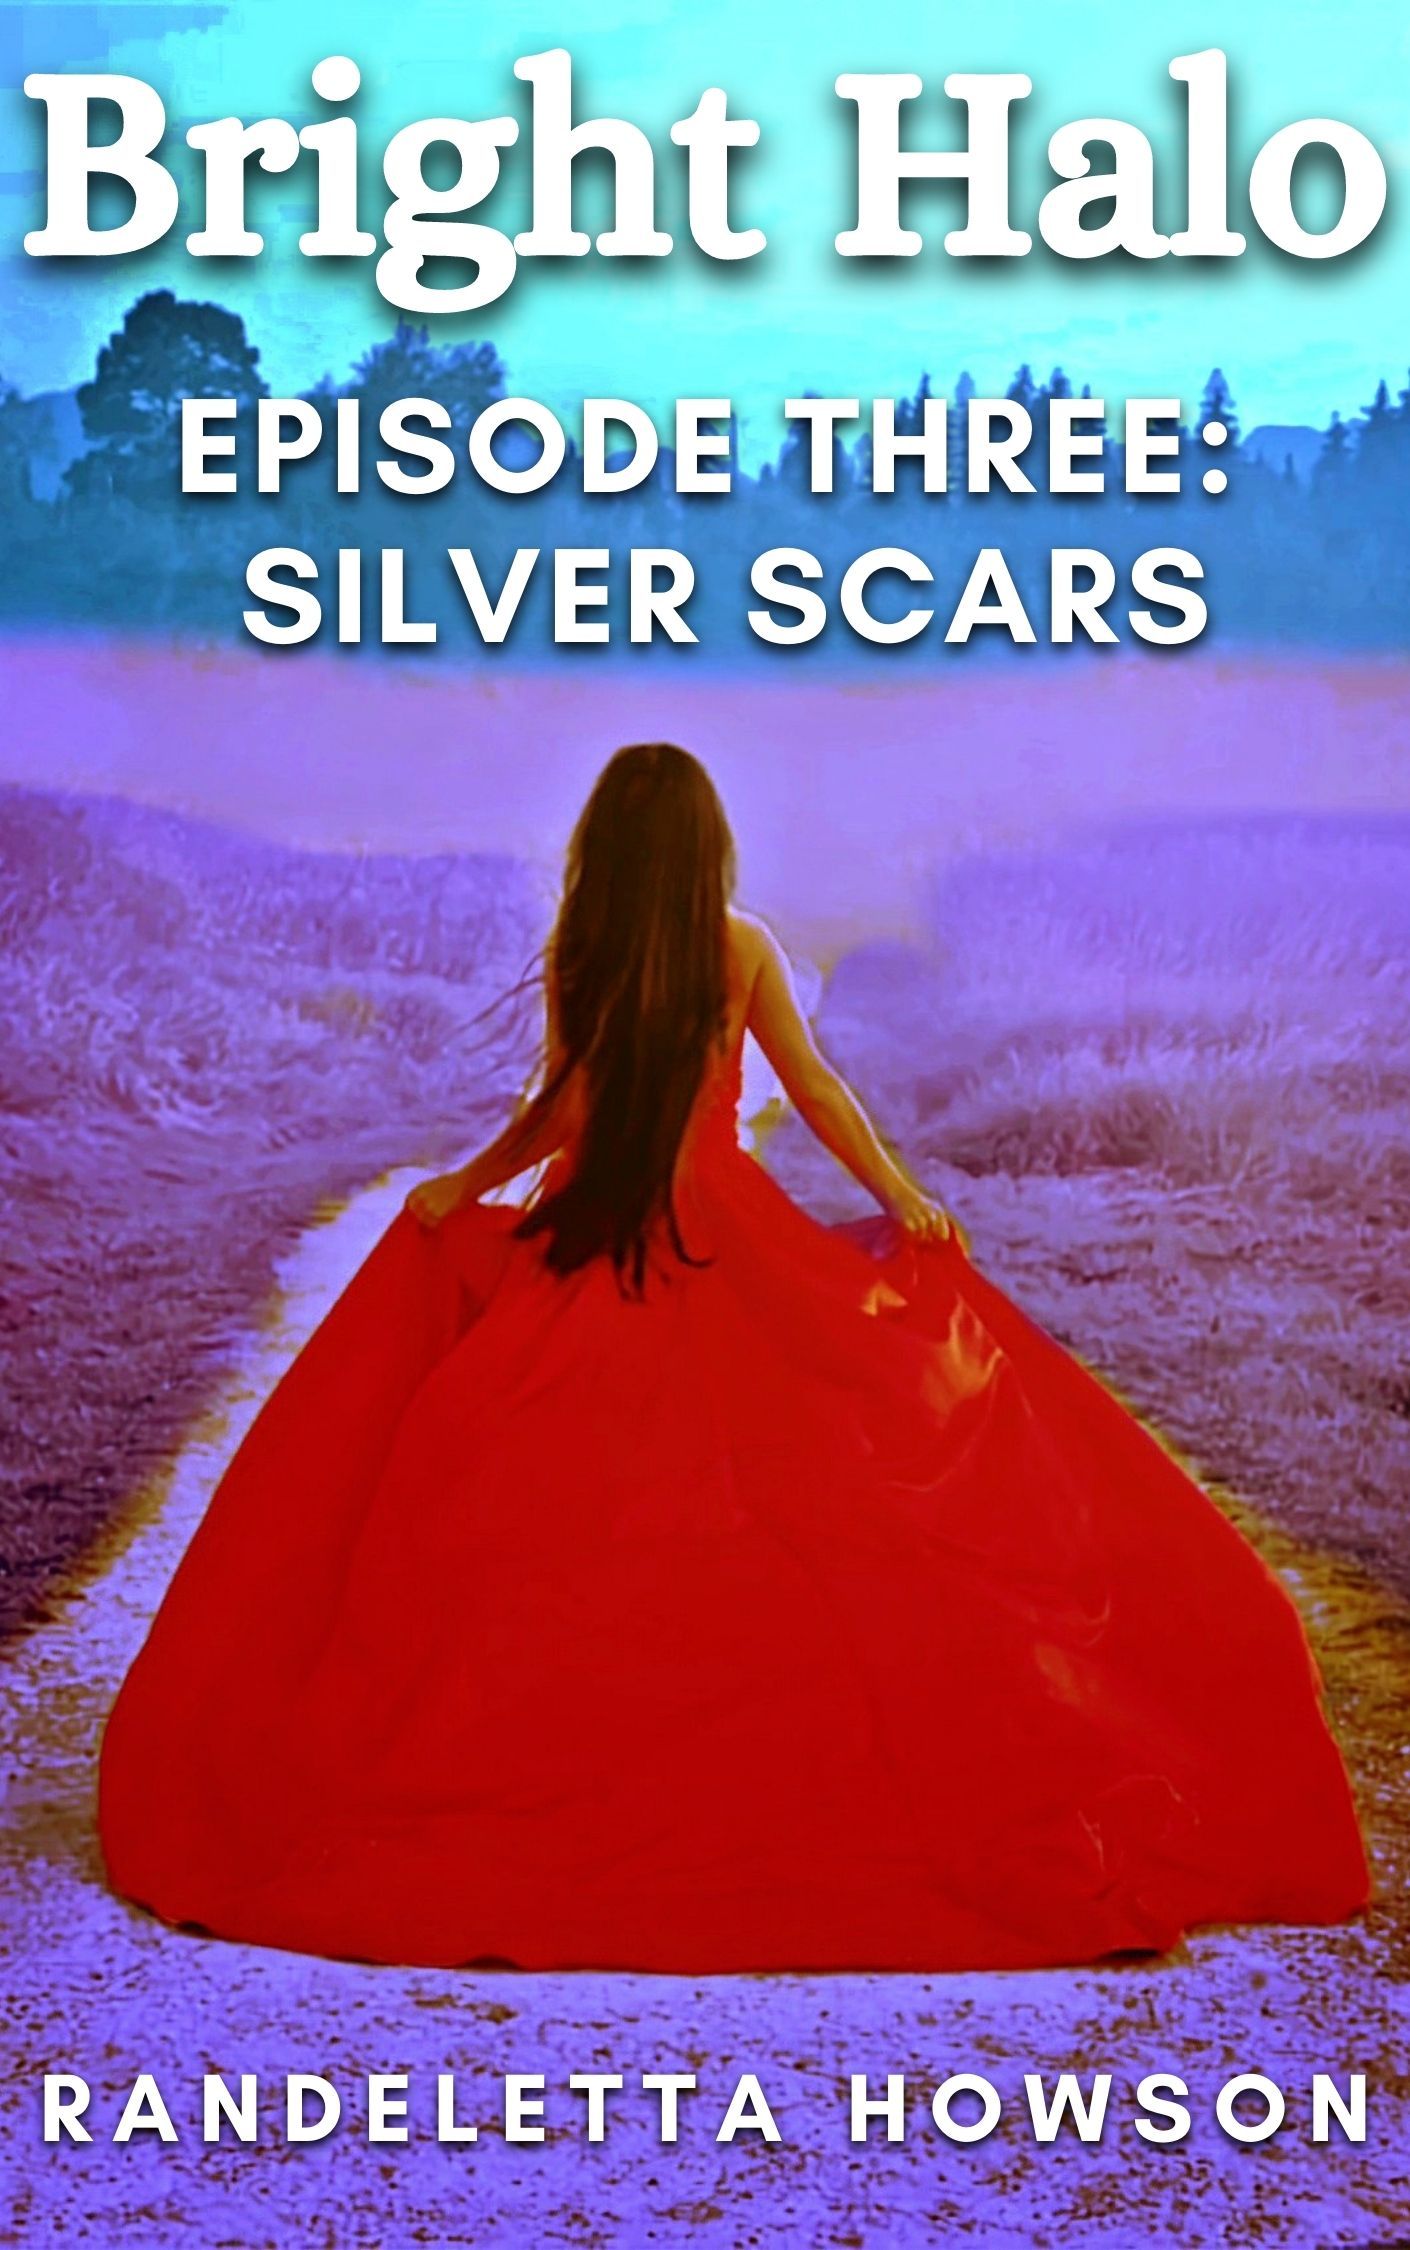 Bright Halo Episode Three: Silver Scars's Book Image